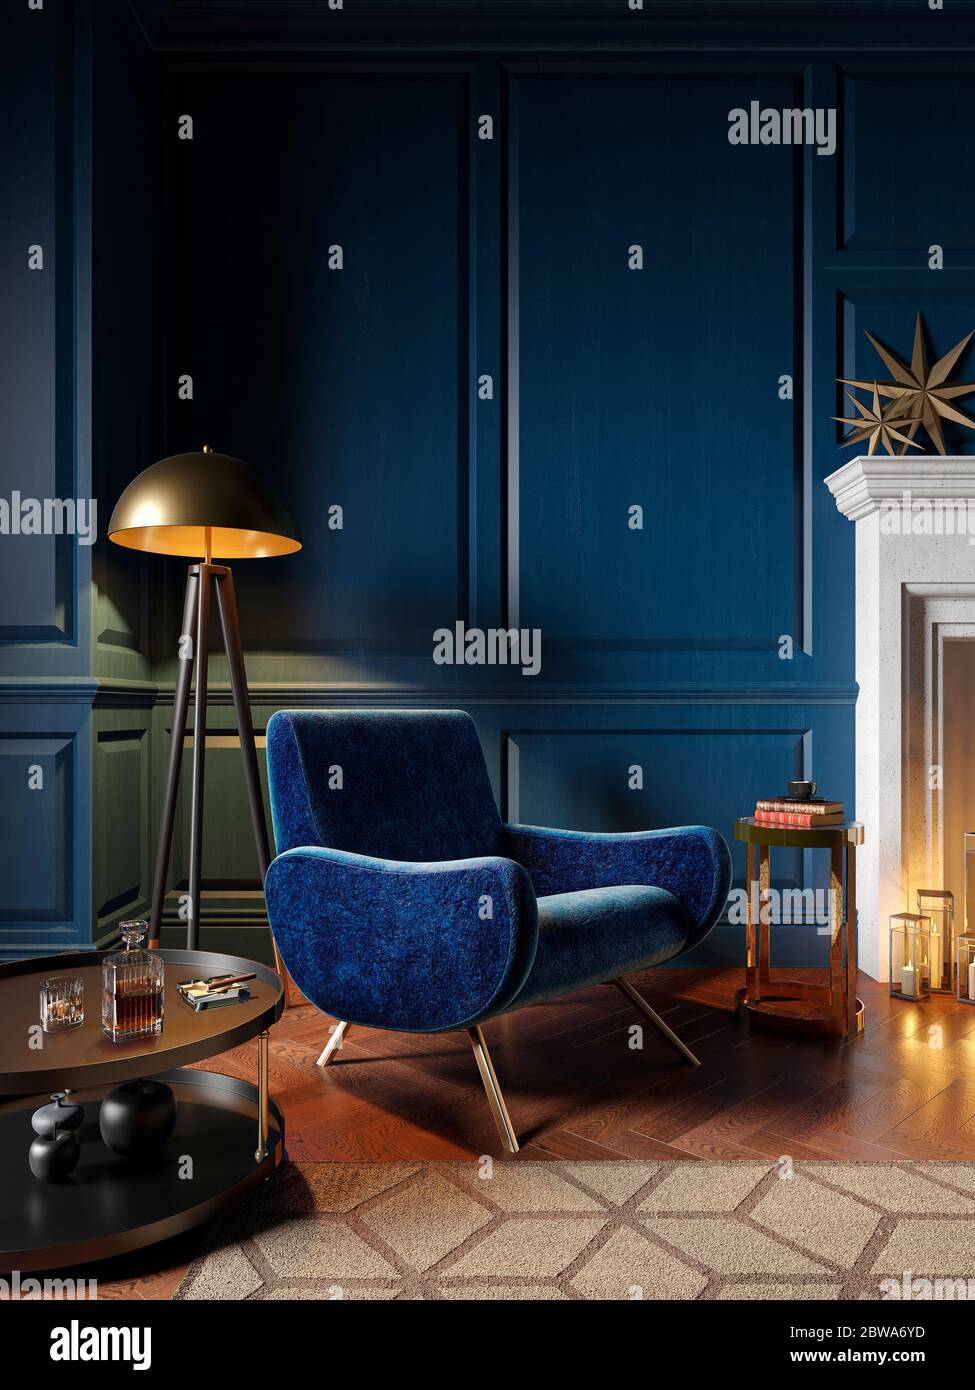 Intérieur classique de couleur bleu roi avec fauteuil, cheminée, bougie, lampadaire, moquette. maquette d'illustration de rendu 3d. Banque D'Images